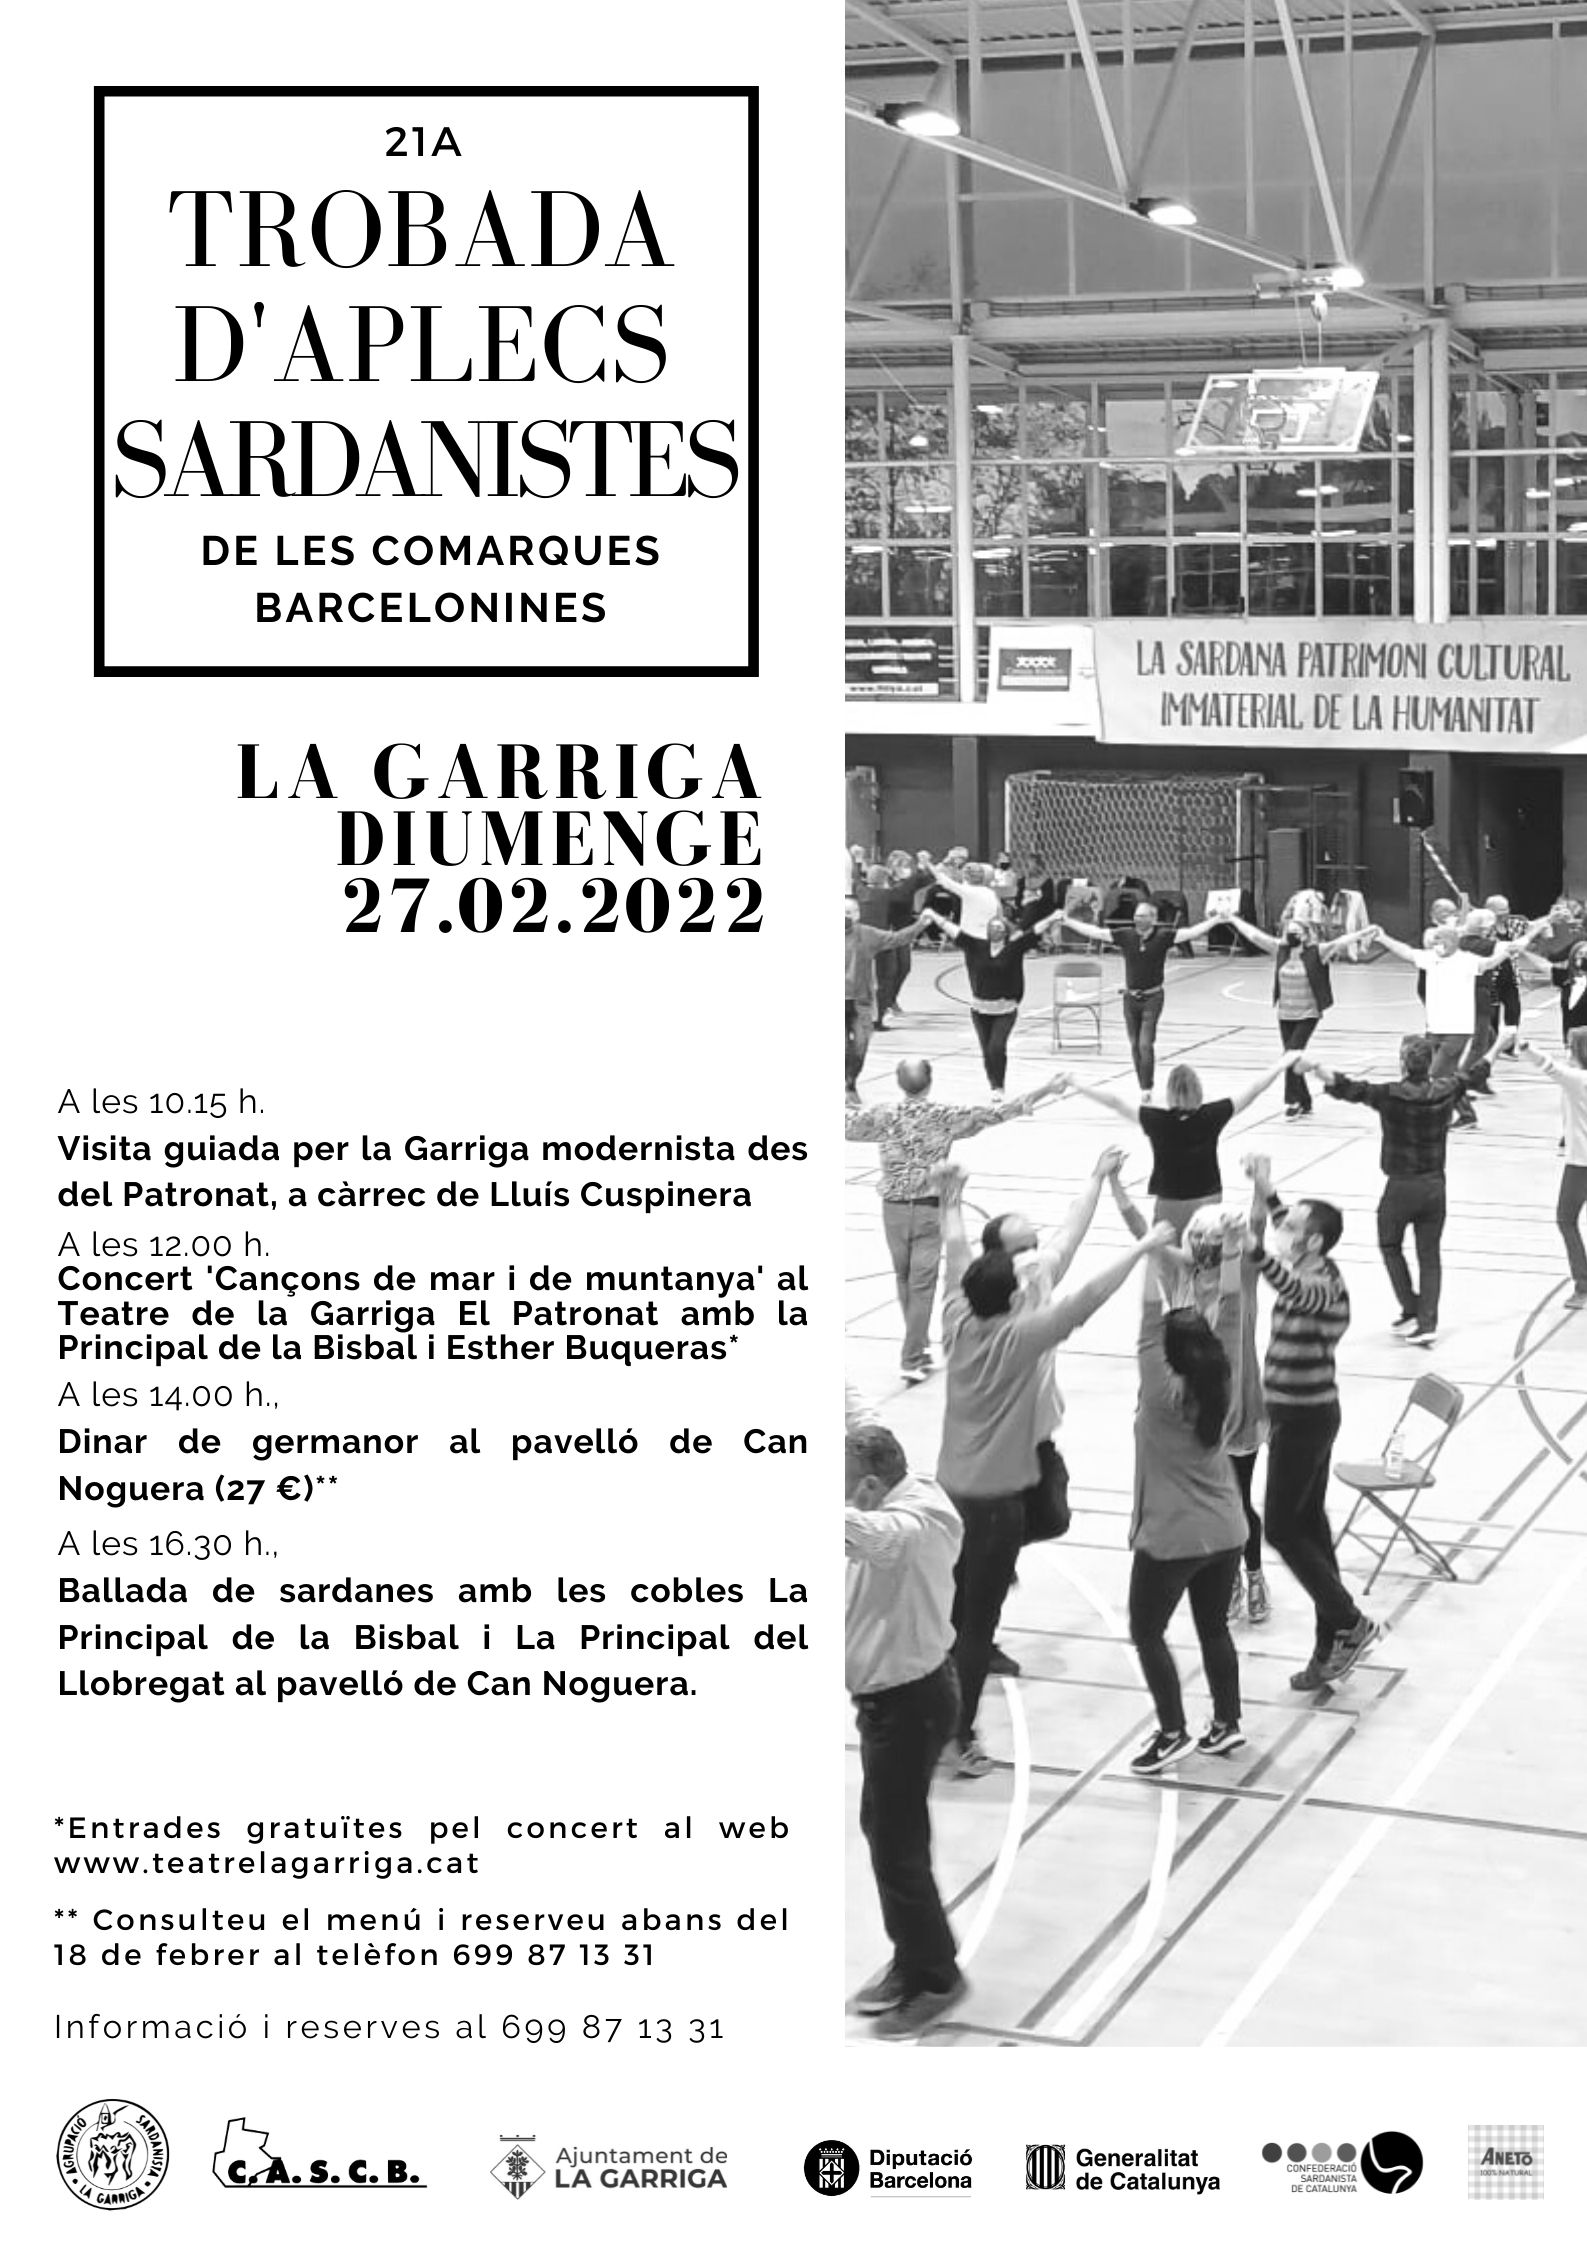 21a Trobada d'Aplecs sardanistes de les Comarques barcelonines